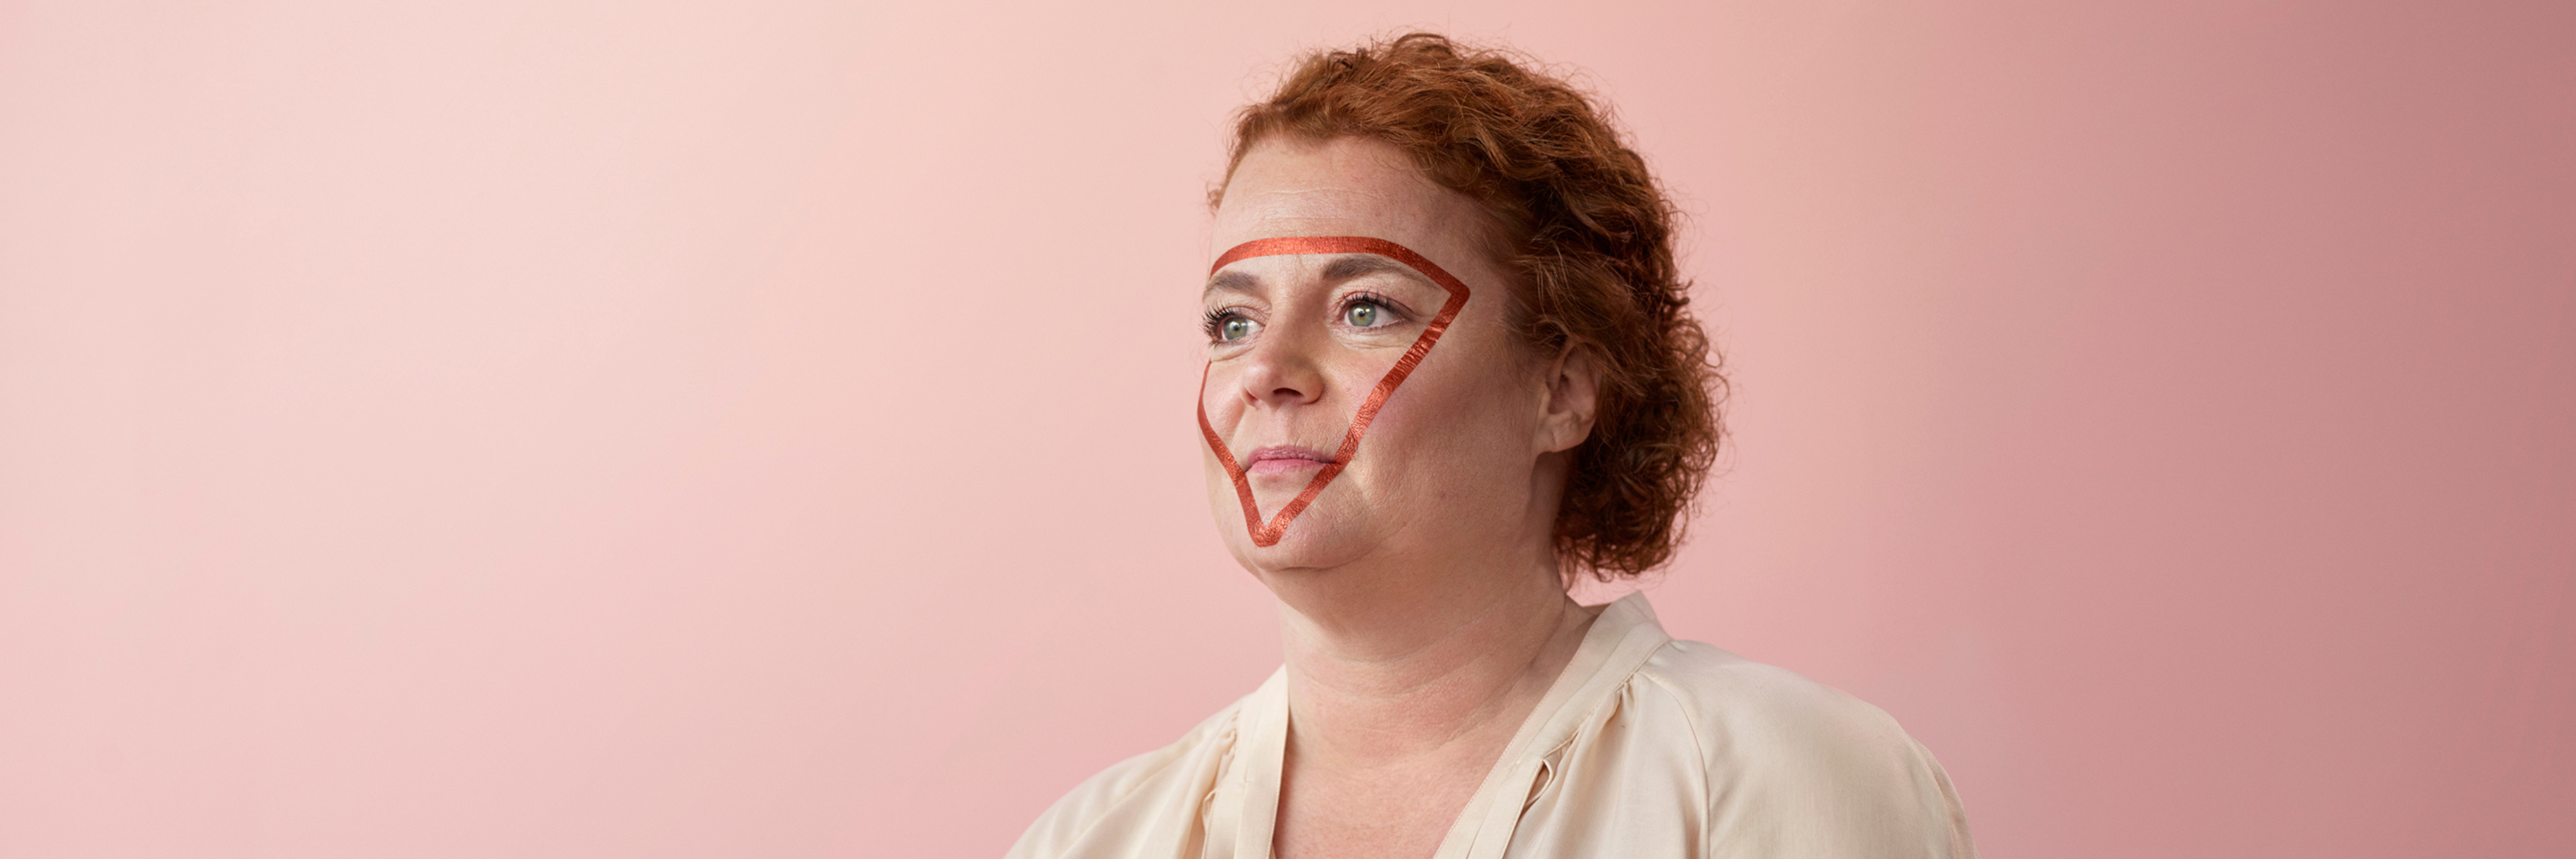 Een poserende vrouw met rode versiering in driehoeksvorm op het gezicht